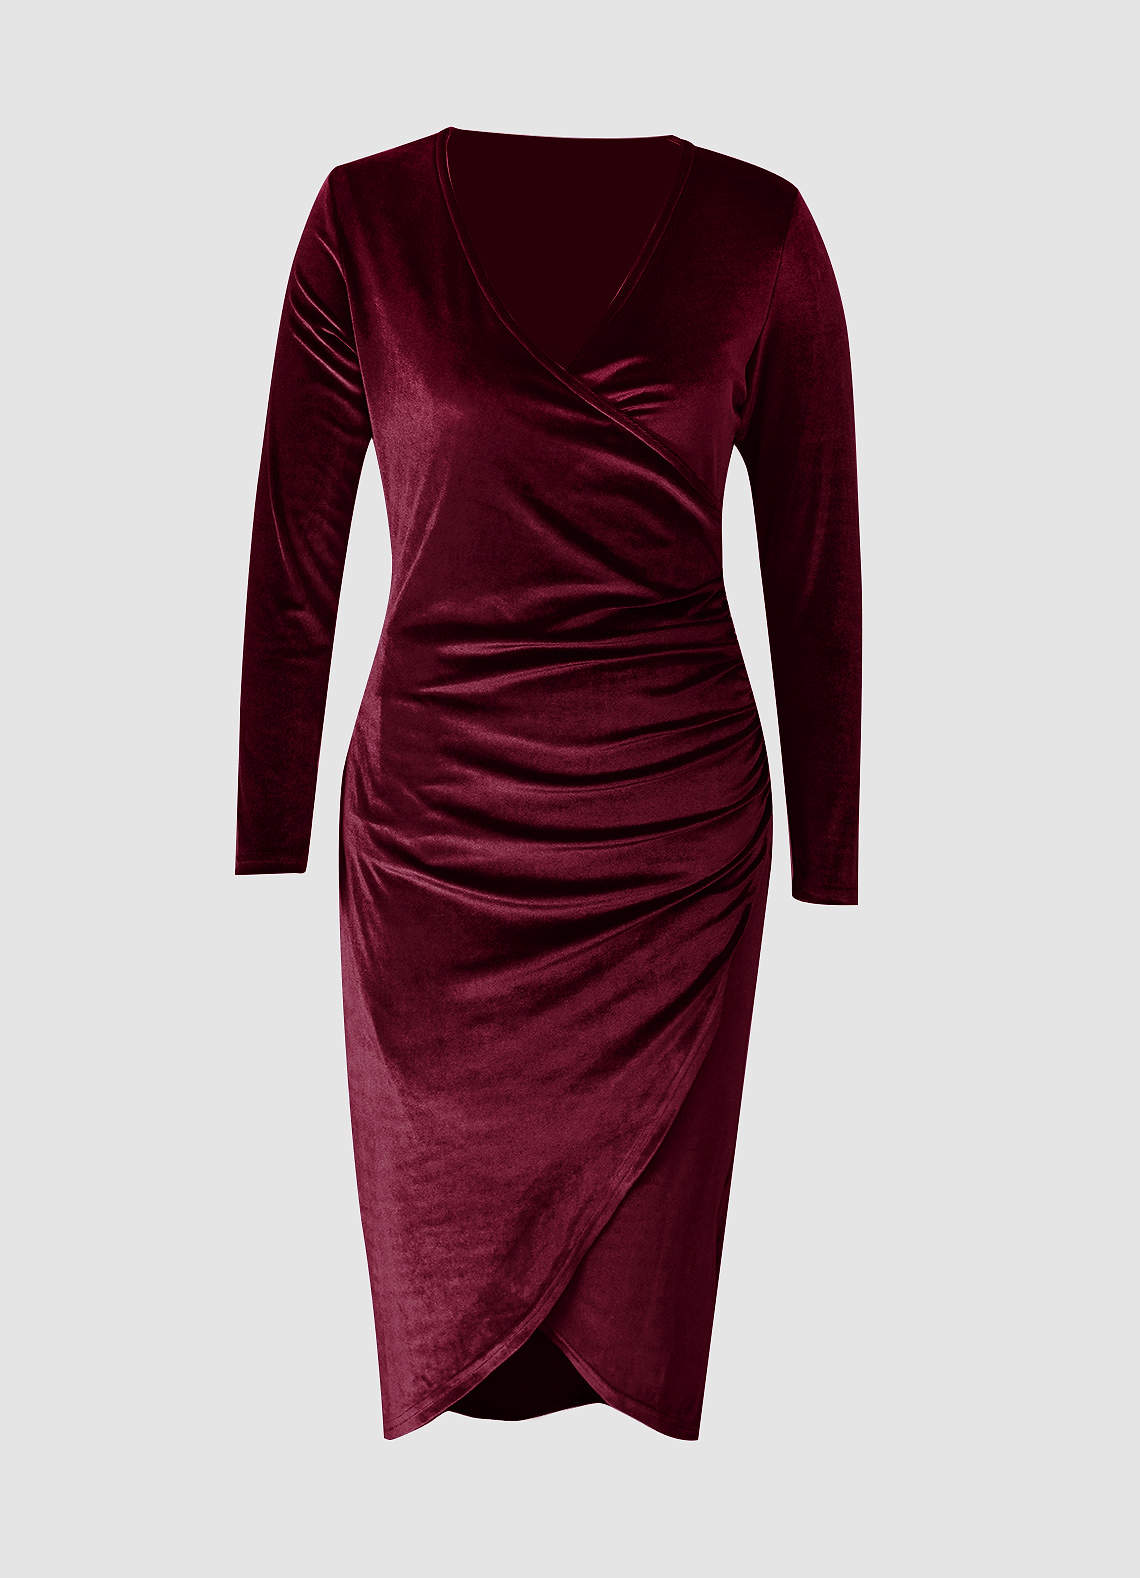 Going For Glamour Burgundy Velvet Long Sleeve Midi Dress image1